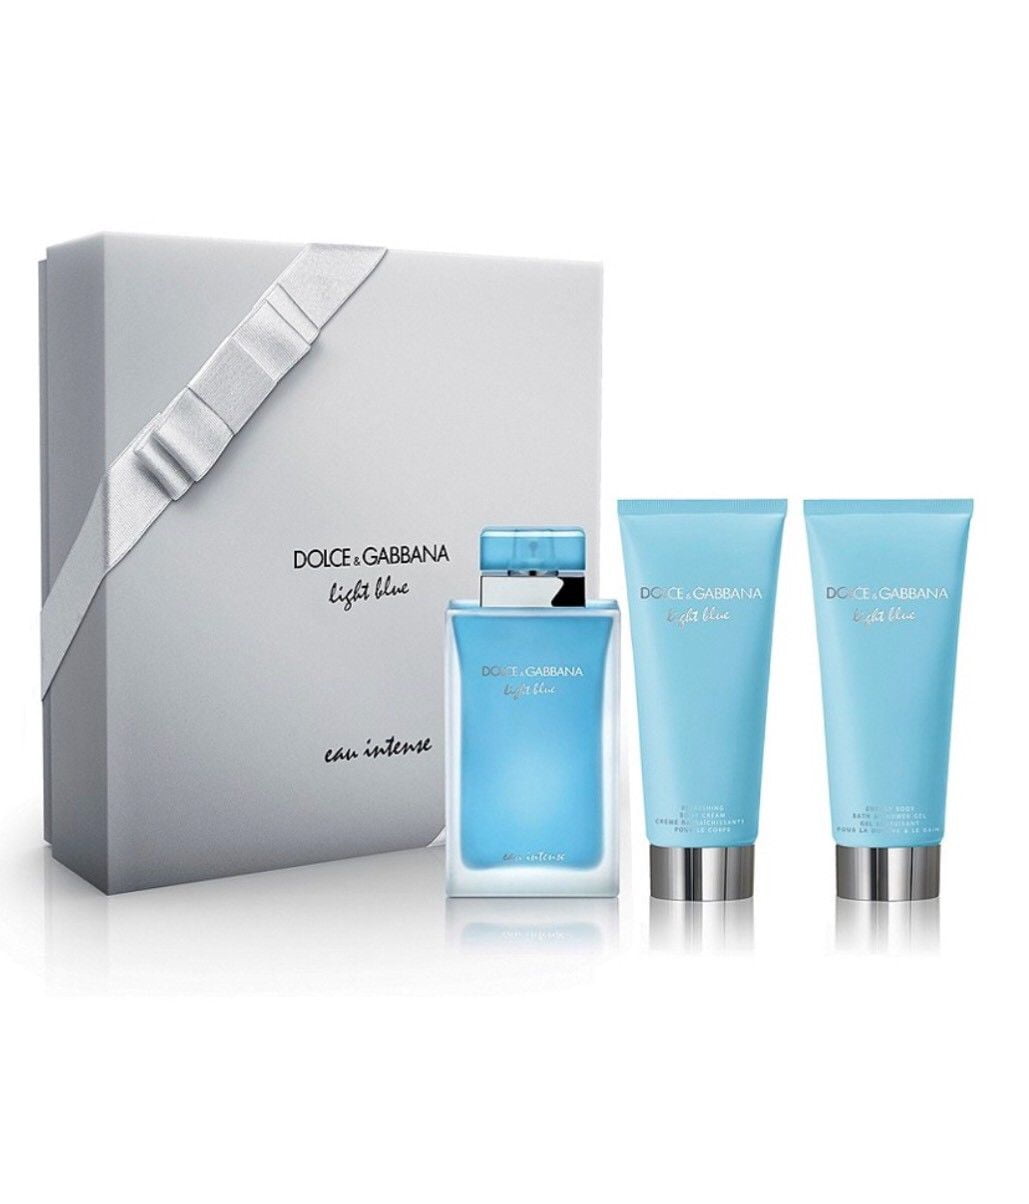 light blue perfume gift set